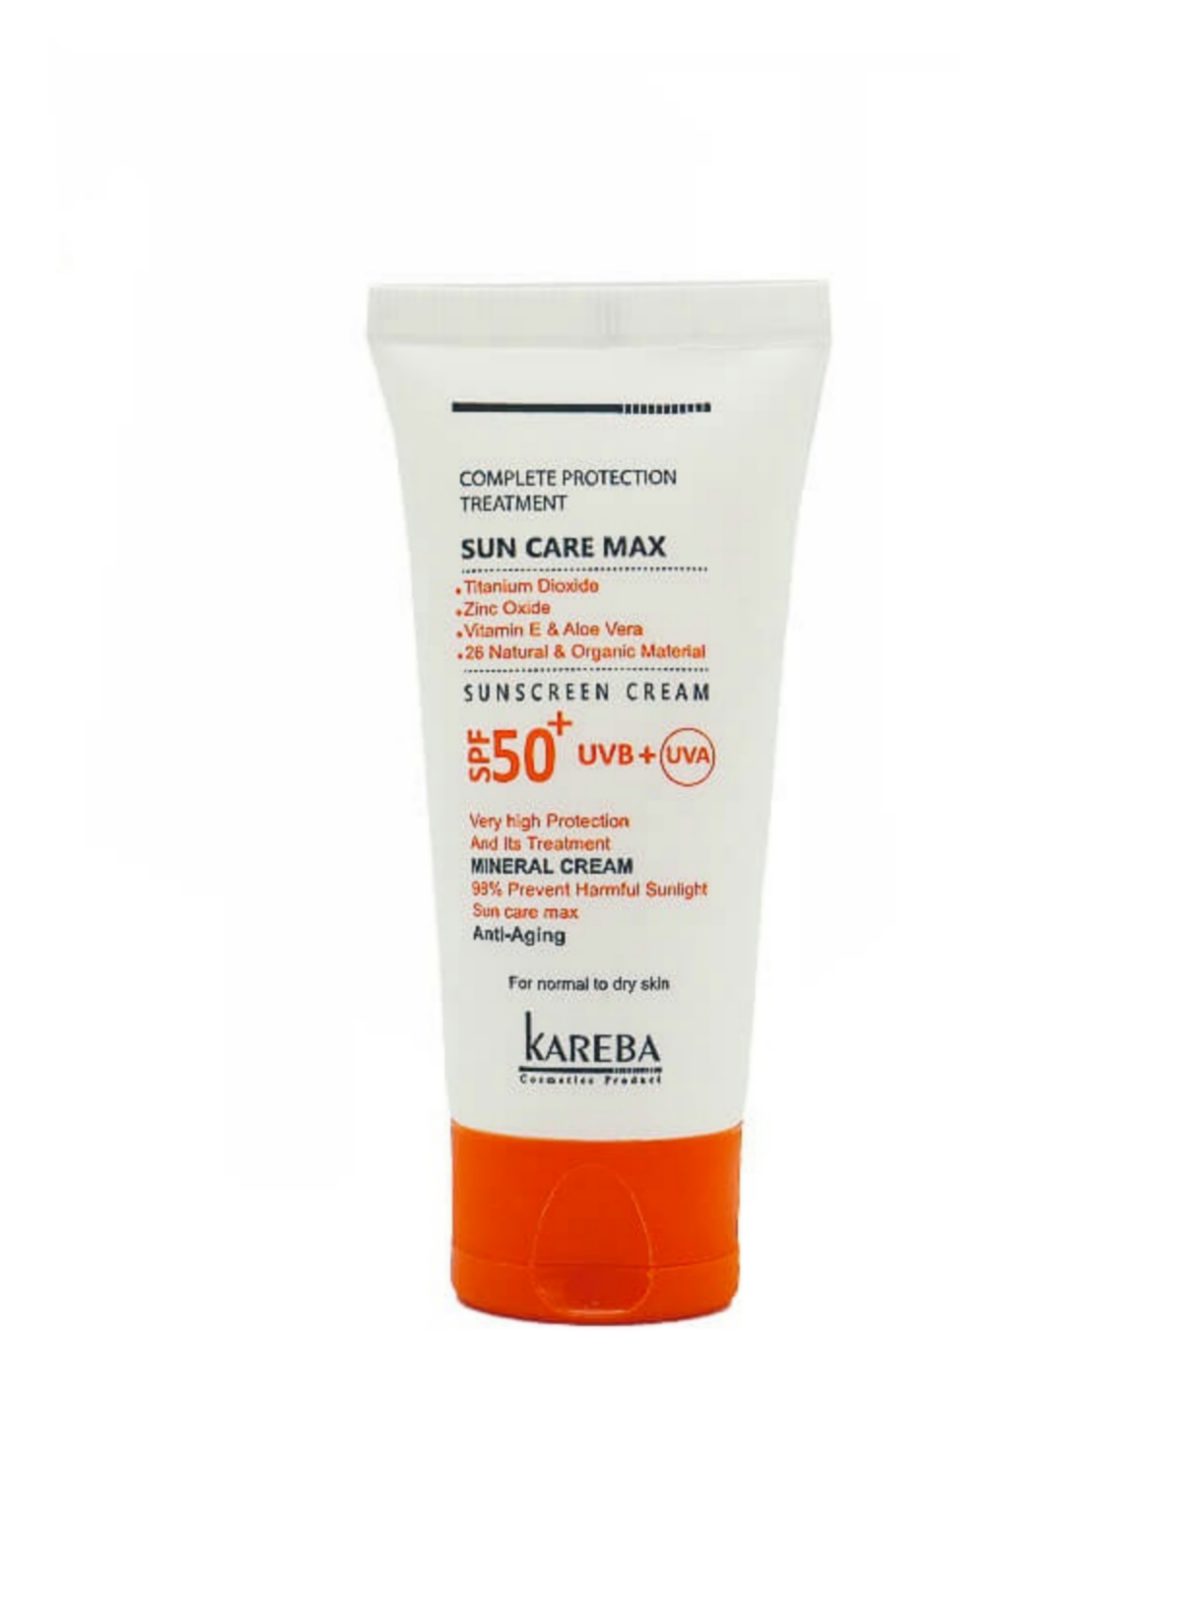 کرم ضد آفتاب بی رنگ SPF50 پوست خشک و حساس کاربا